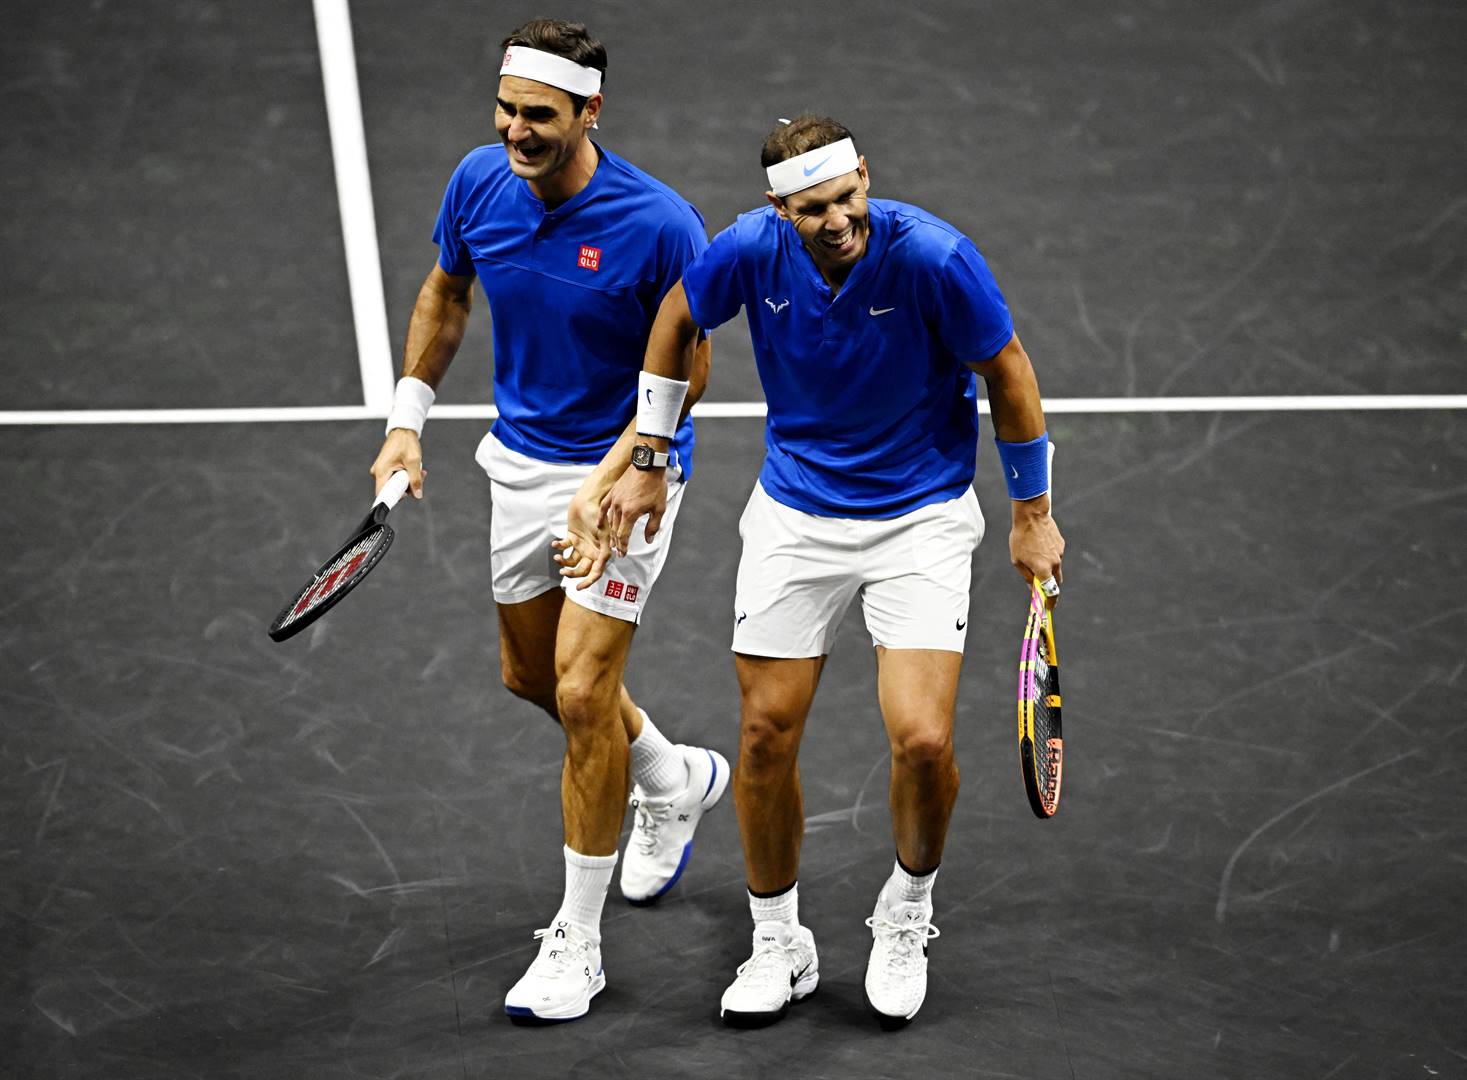 Dik pêlle. Die tennishelde Roger Federer en Rafael Nadal het die naweek kragte saamgesnoer in ’n dubbelspelwedstryd. Dit was deel van Laverbeker-toernooi wat in Londen gehou is, en Federer se laaste beroepswedstryd. Hulle het groot pret gehad. Foto: REUTERS/Dylan Martinez